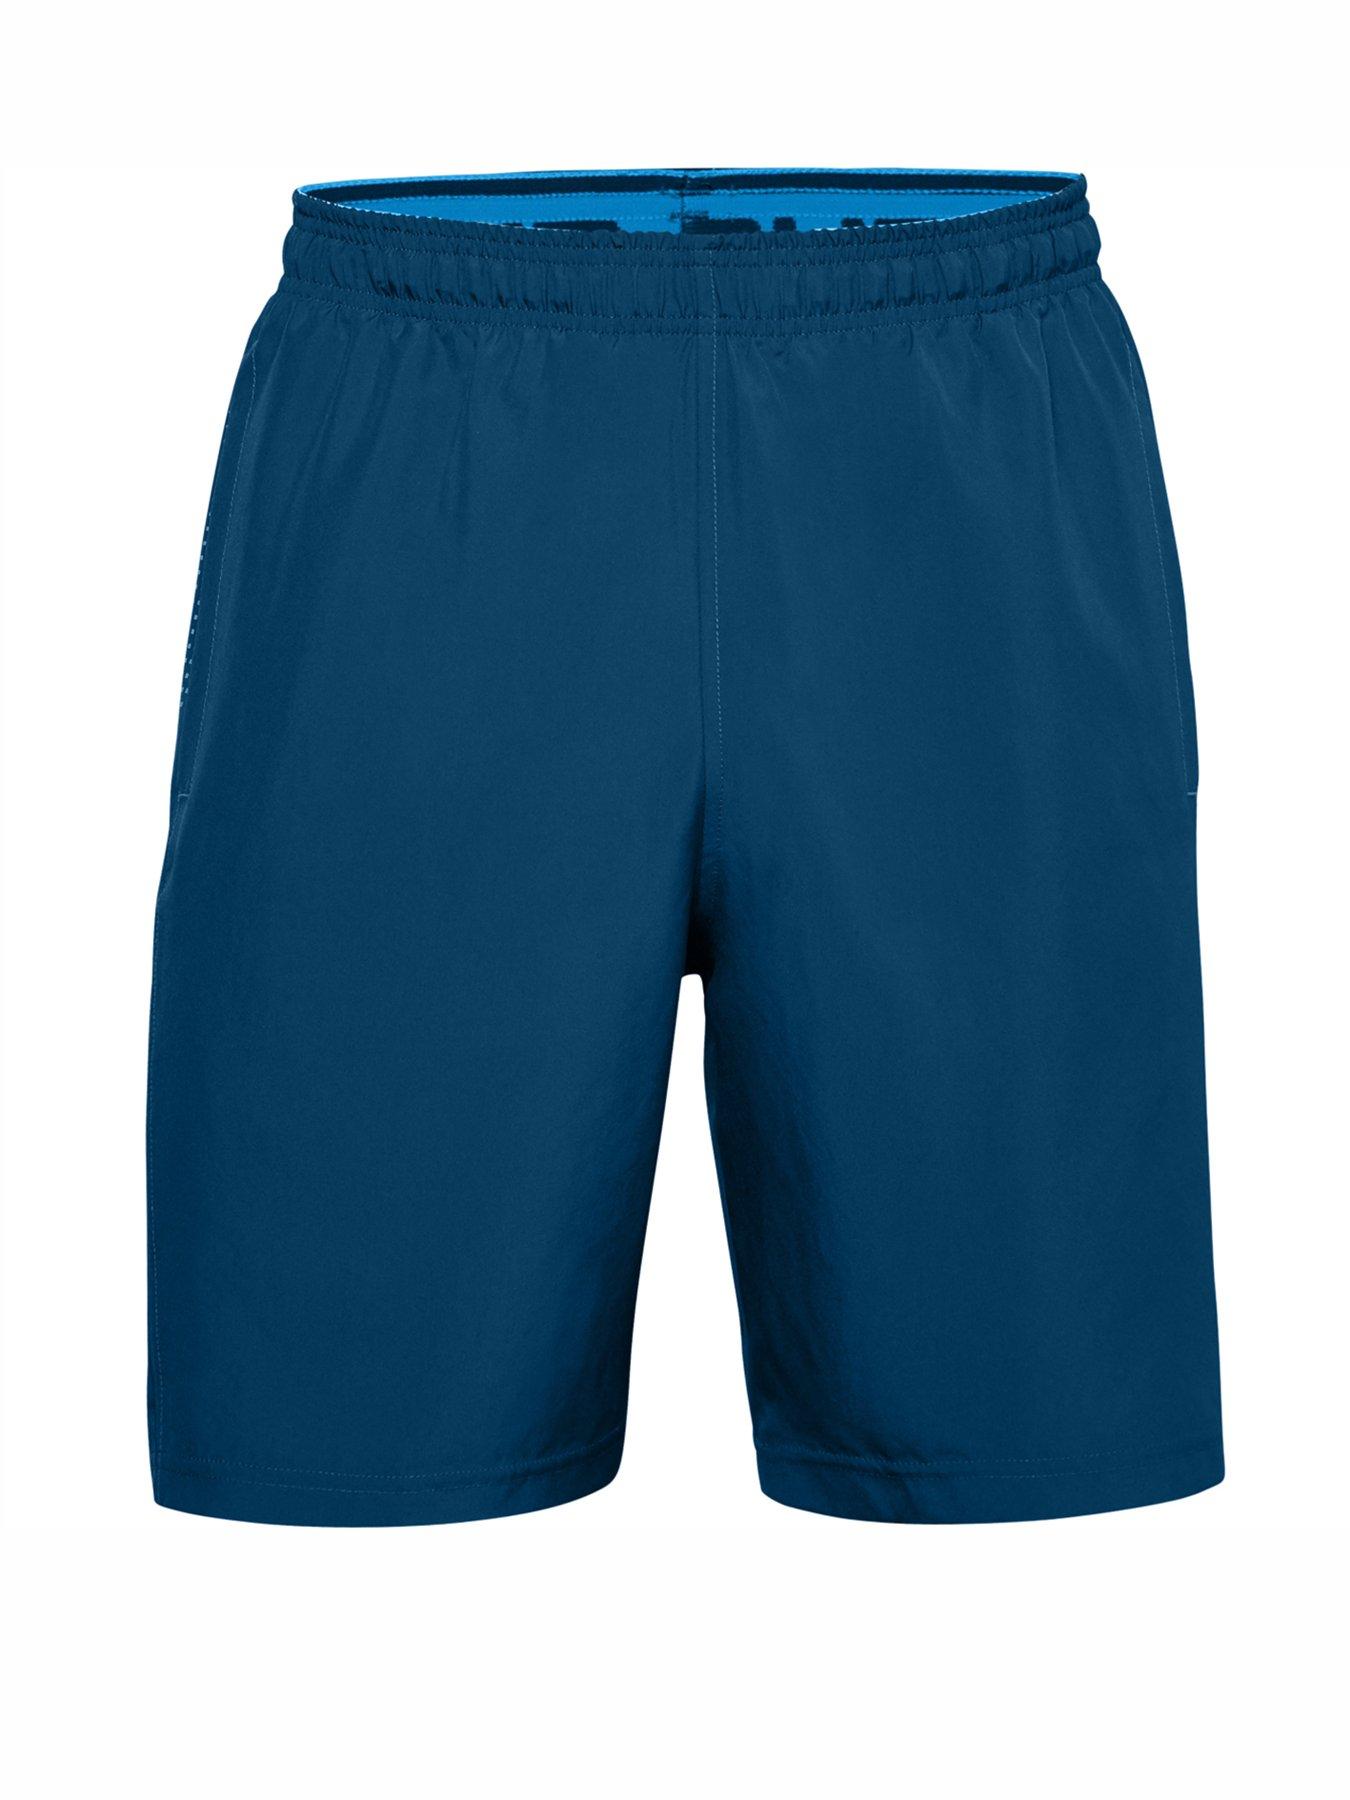 Men Woven Graphic Shorts - Blue